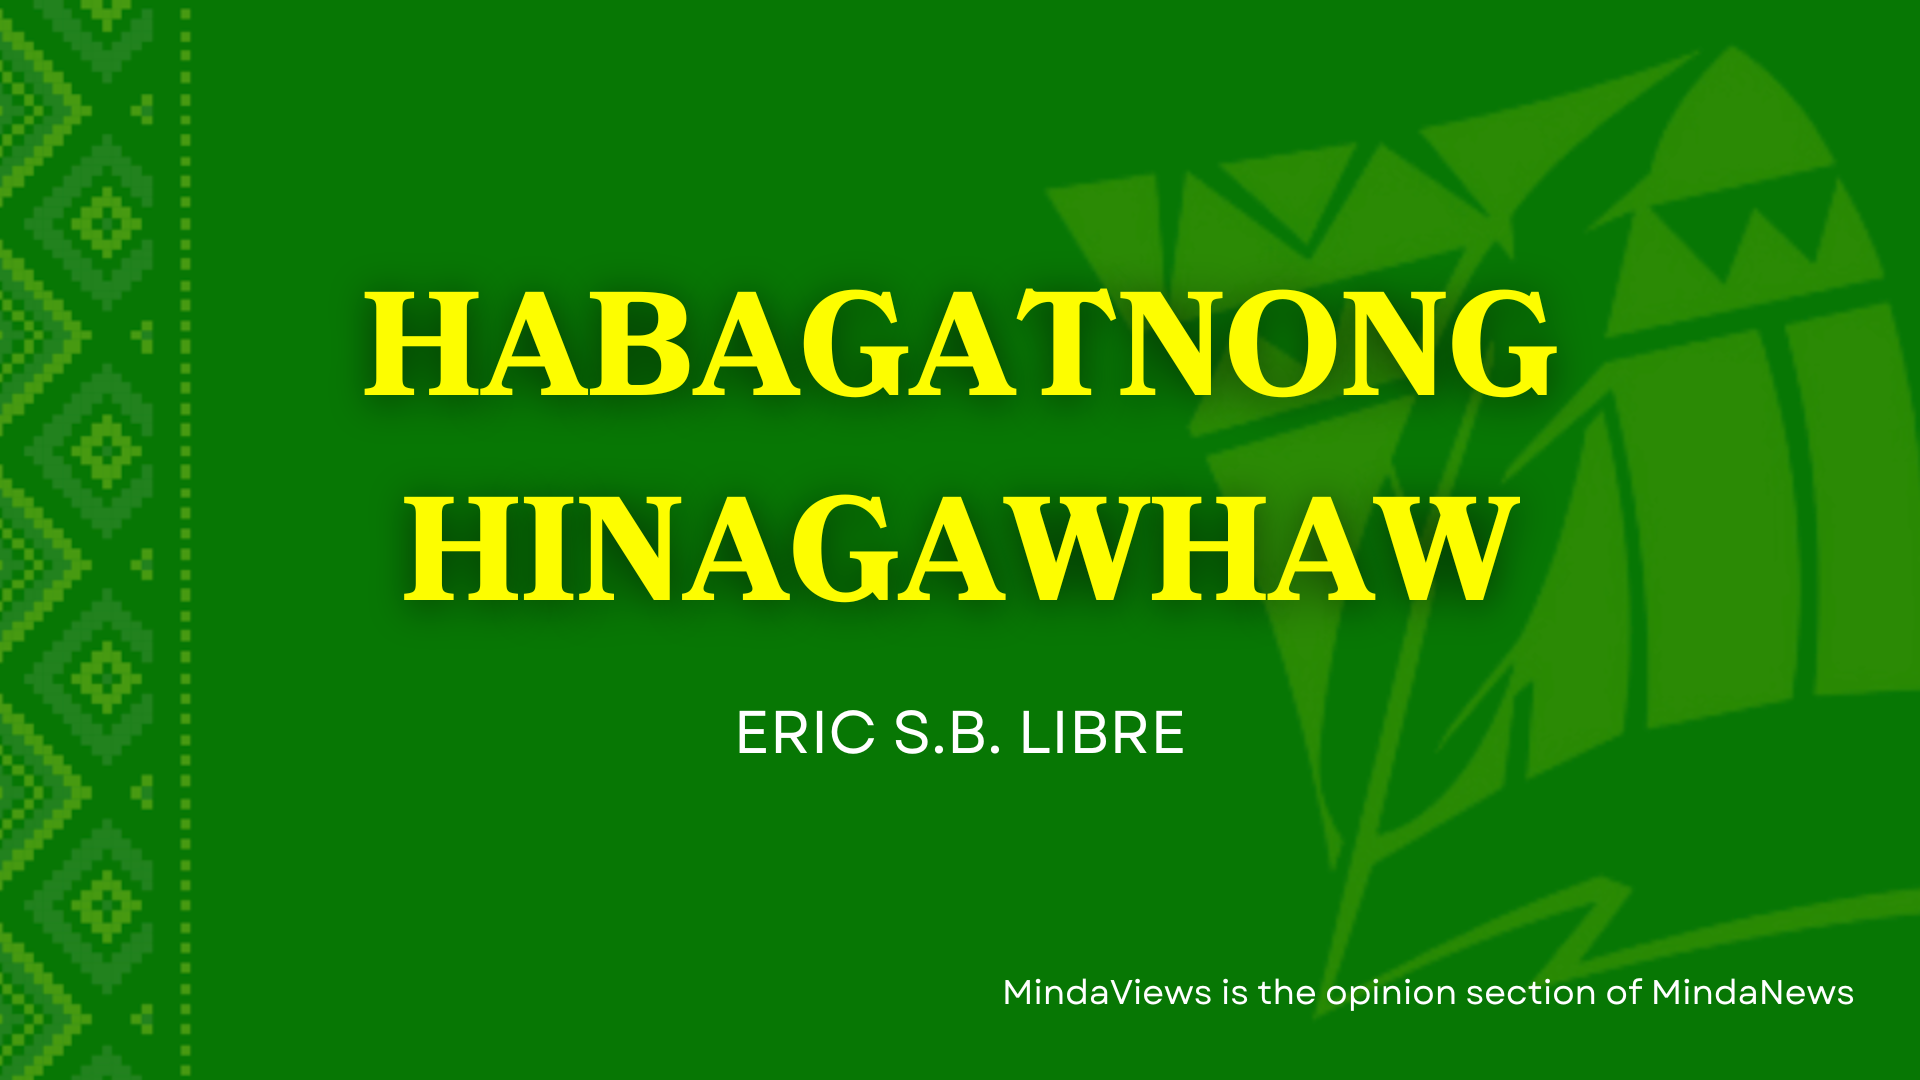 habagatnong hinagawhaw column title mindaviews